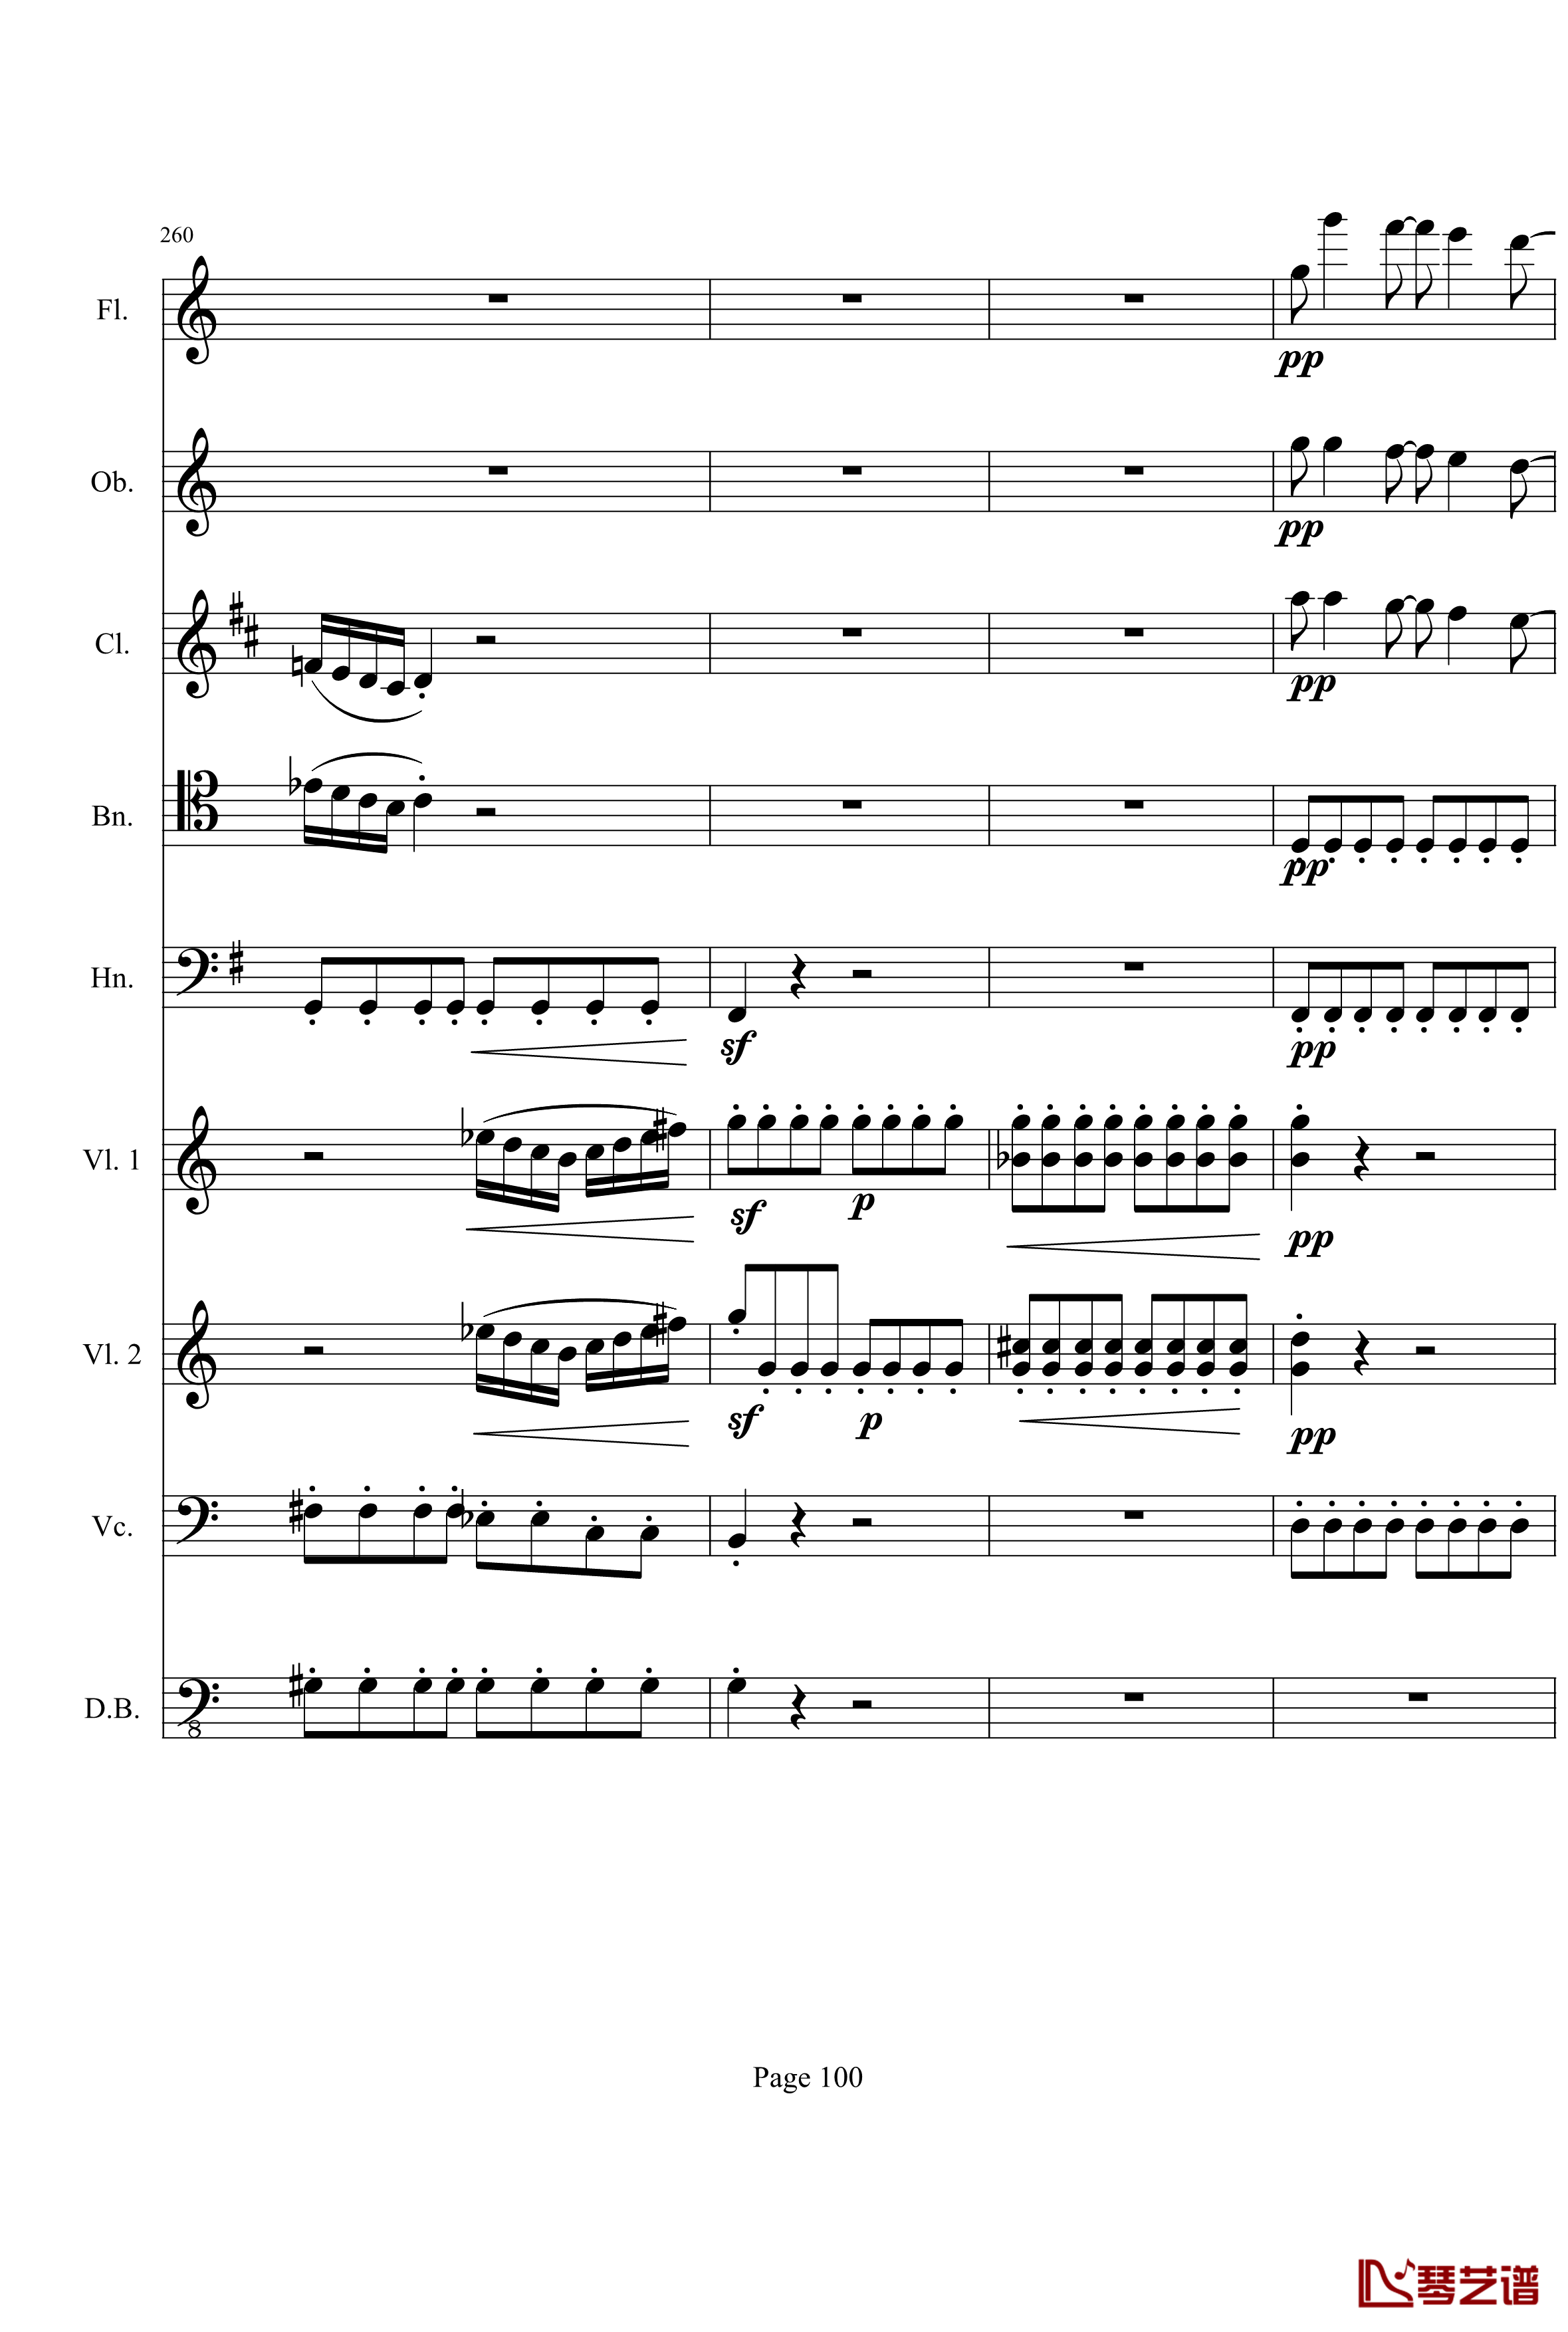 奏鸣曲之交响钢琴谱-第21-Ⅰ-贝多芬-beethoven